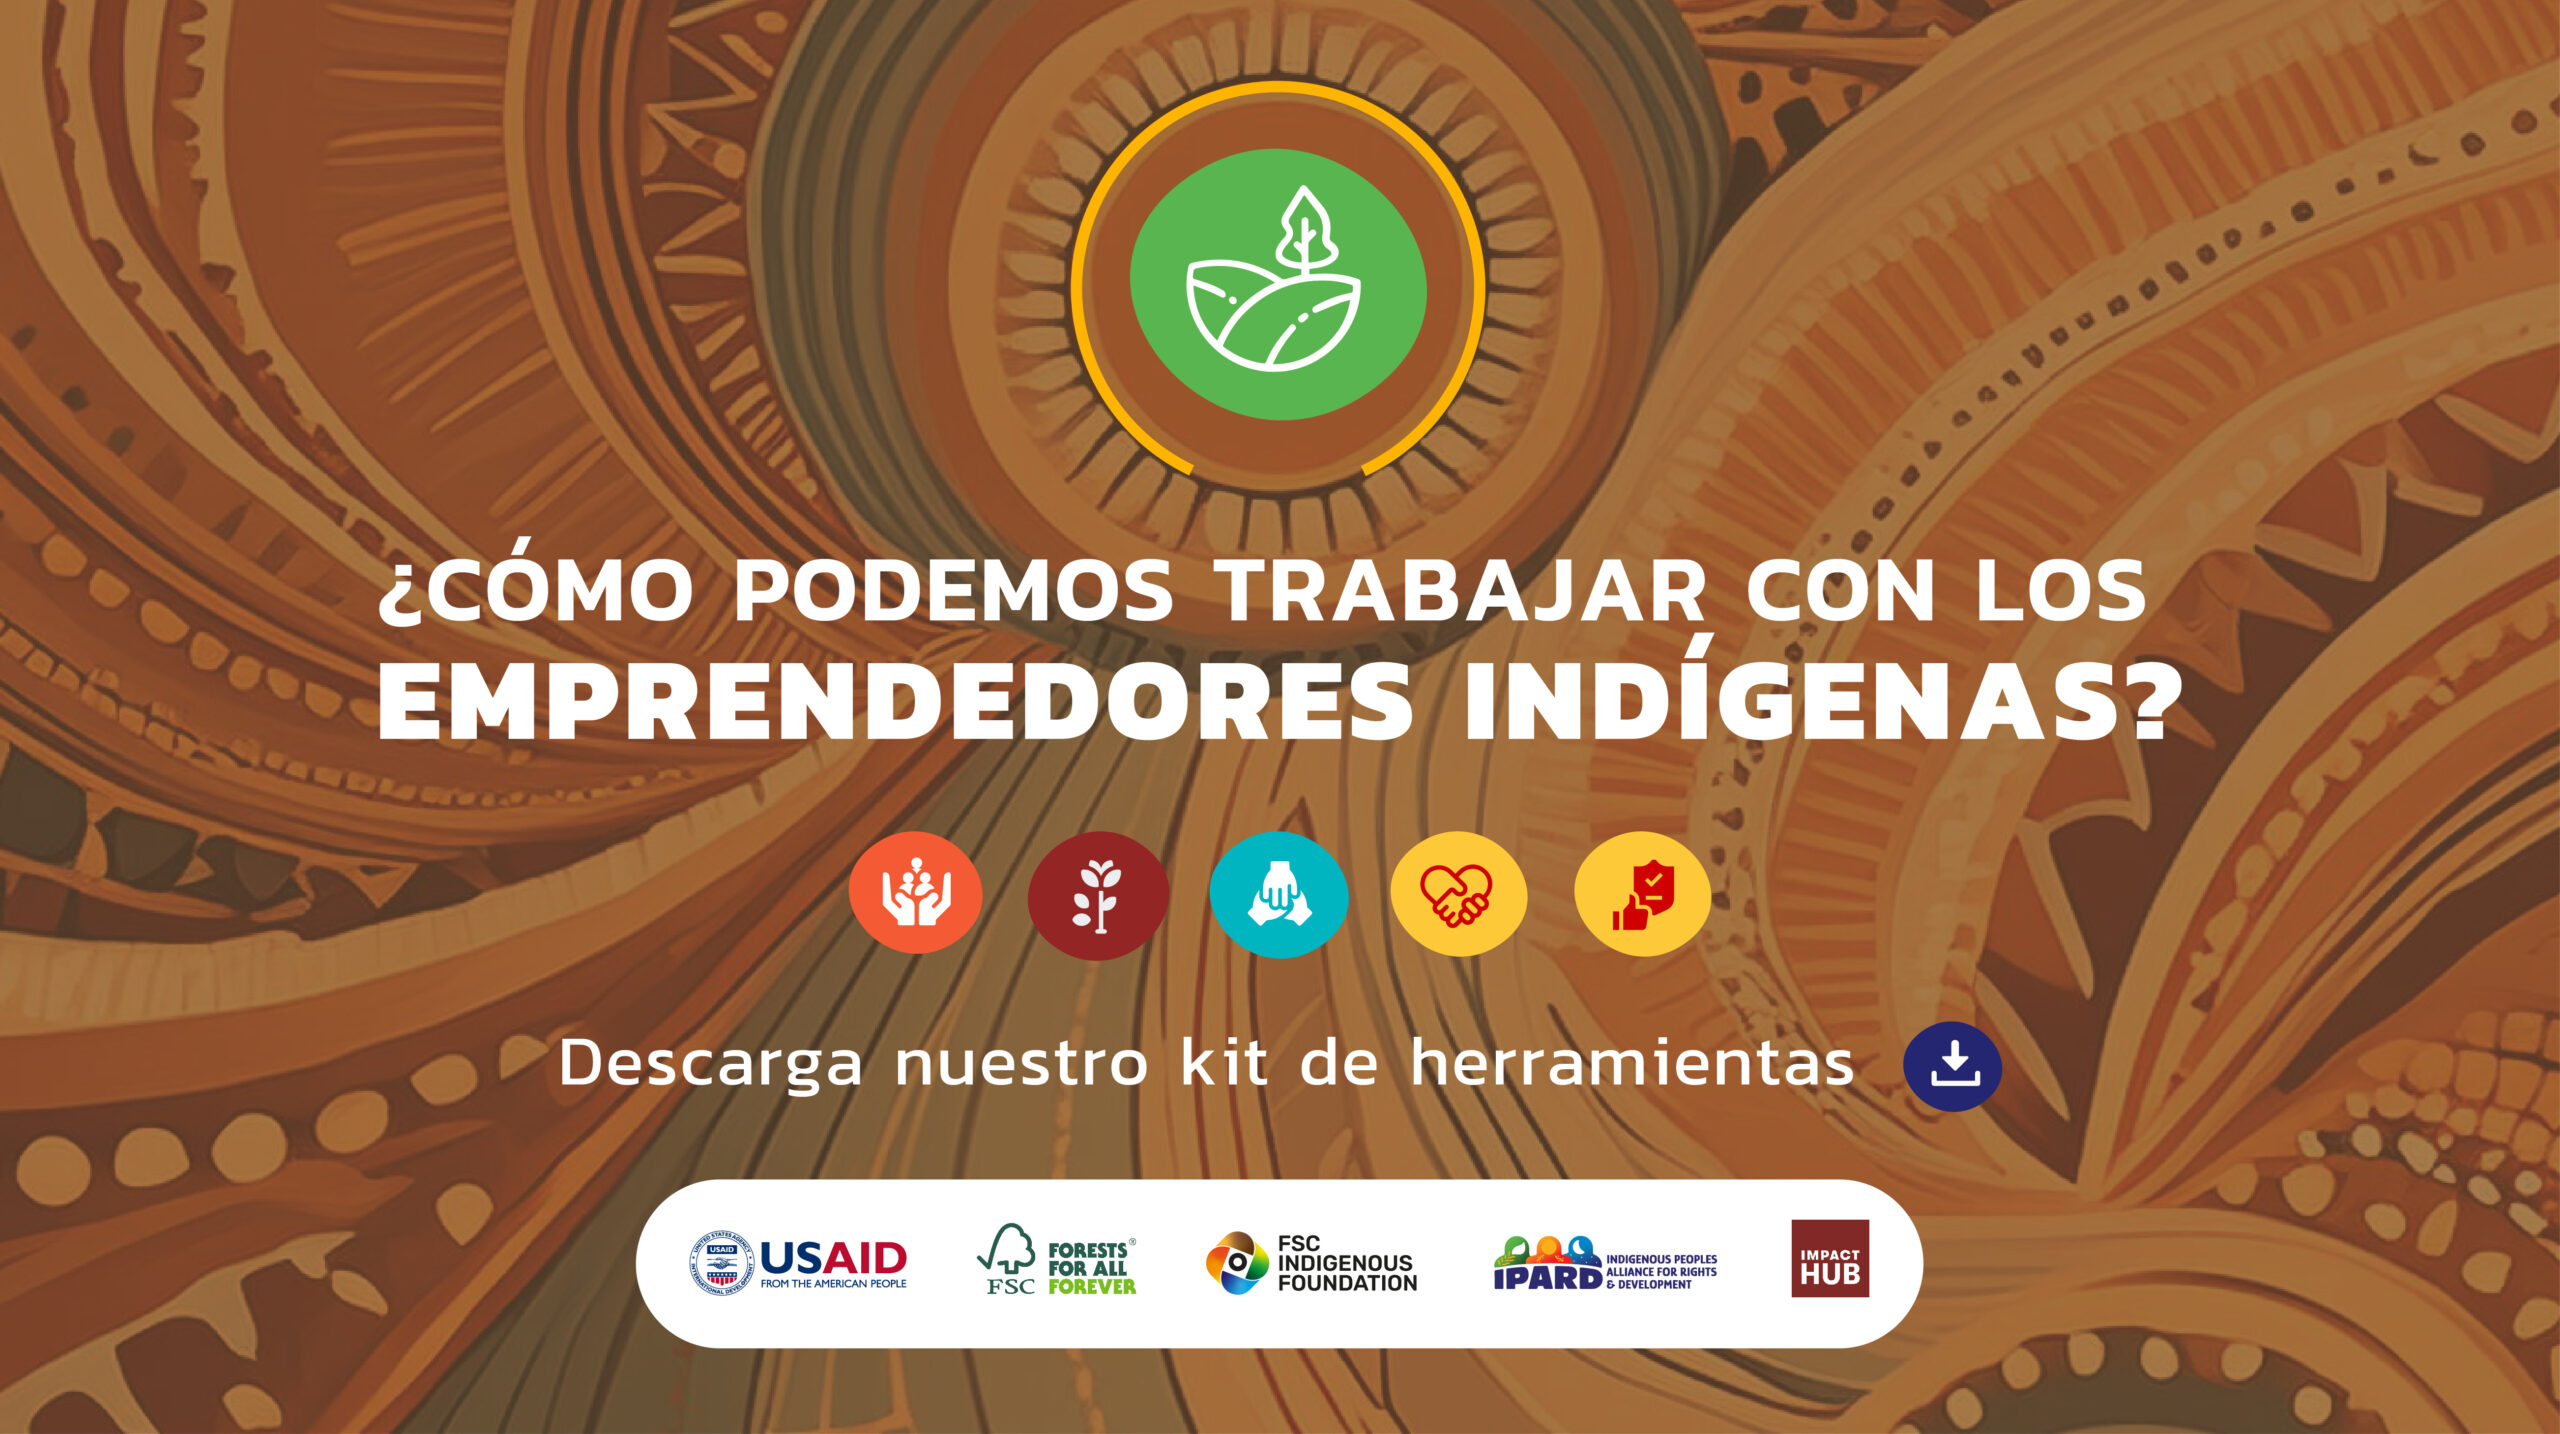 Un nuevo toolkit desbloquea el apoyo accesible a los empresarios Indígenas